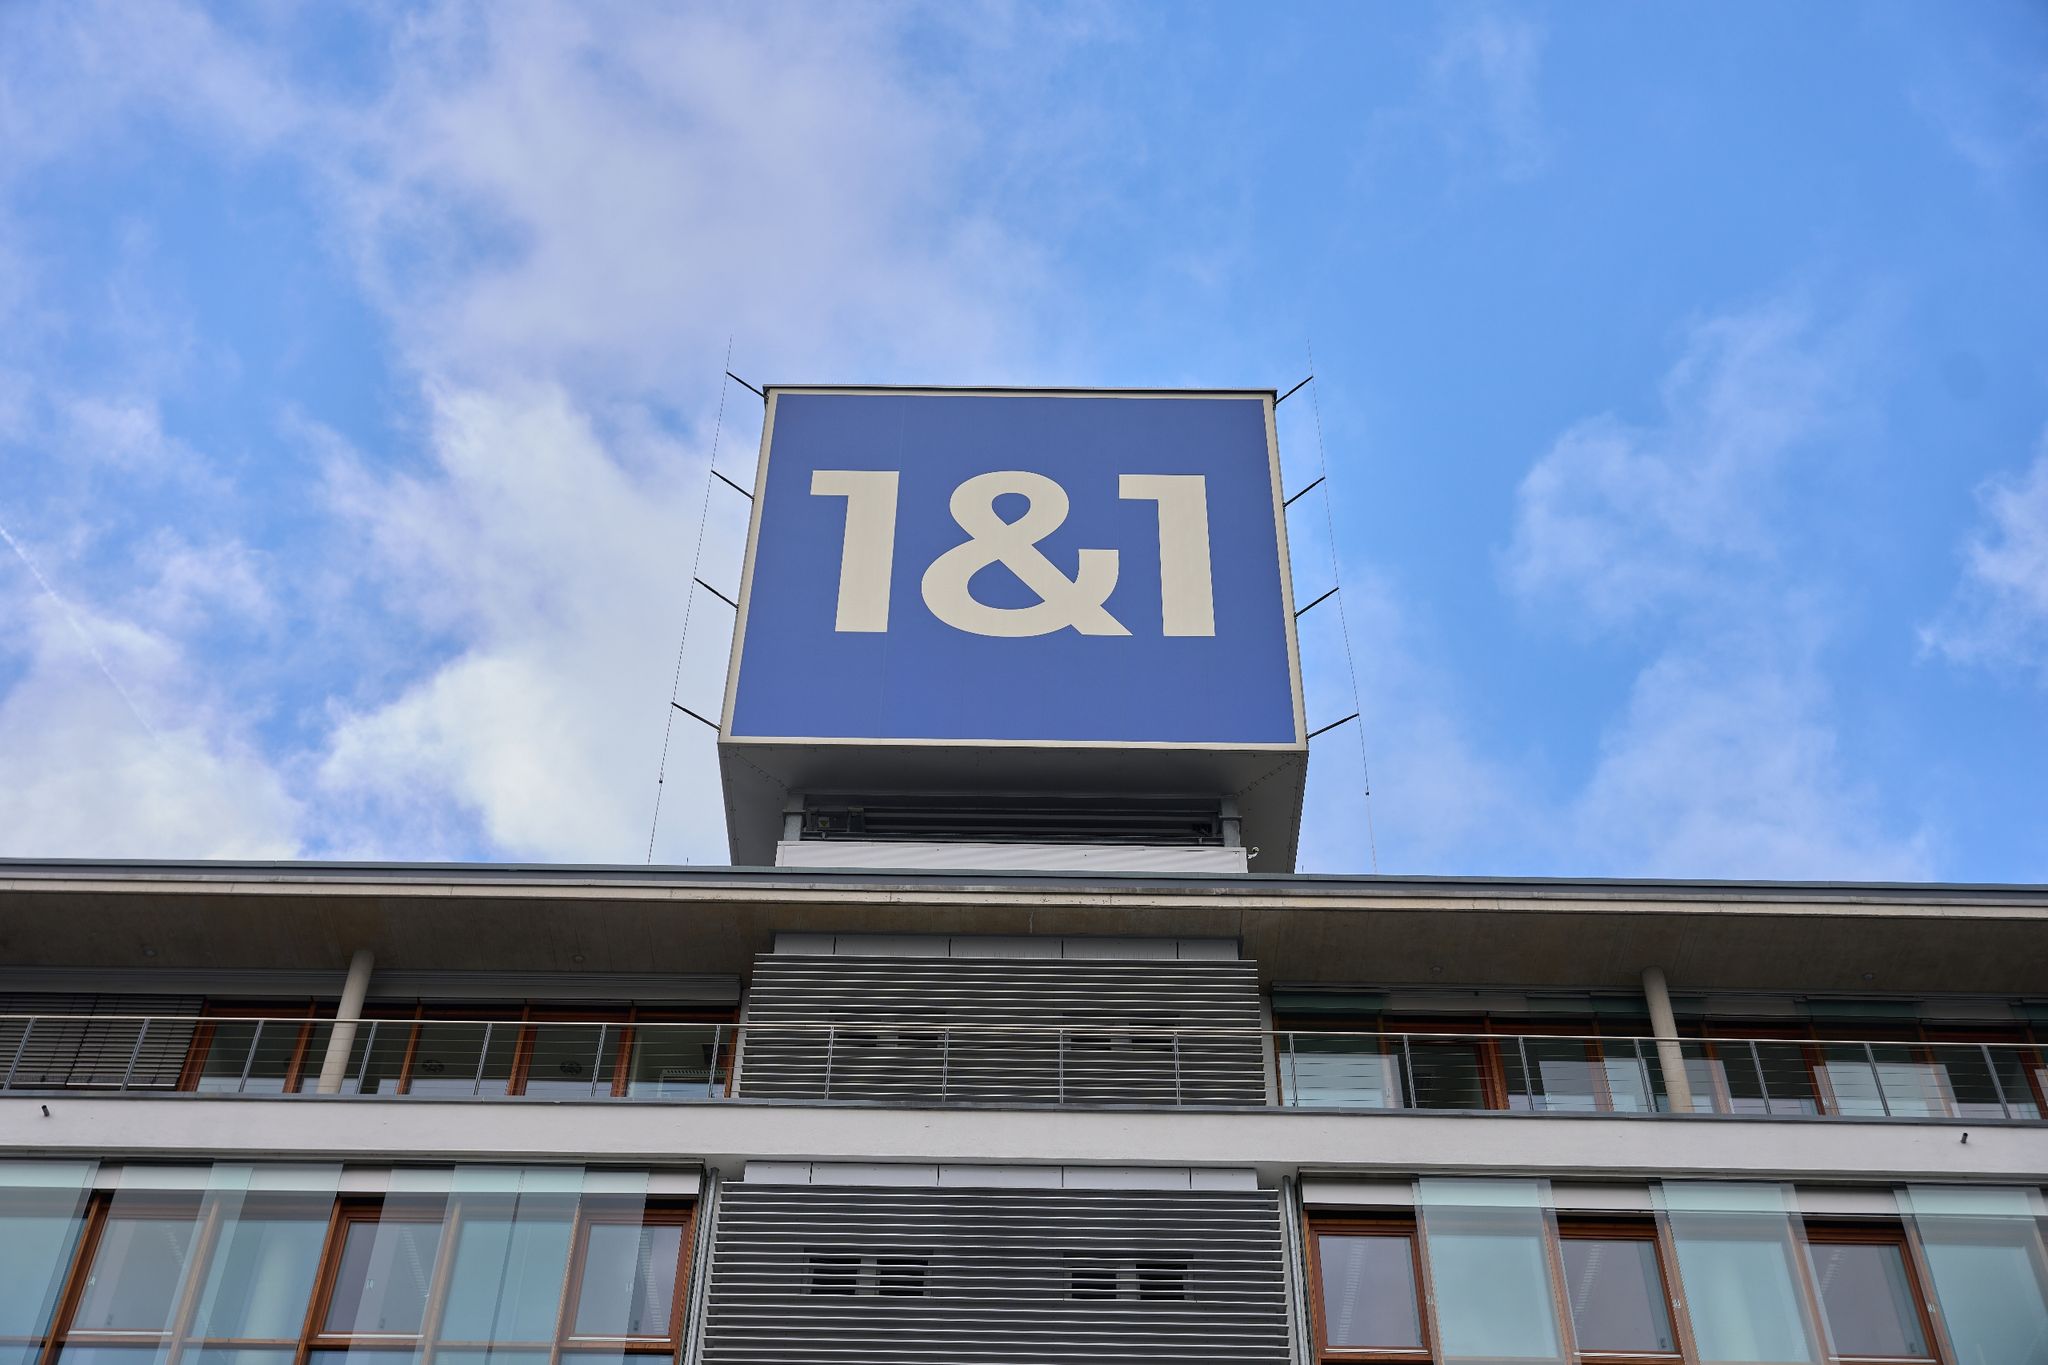 Der Telekommunikationskonzern 1&1 will heute seine mobilen Dienste offiziell starten.